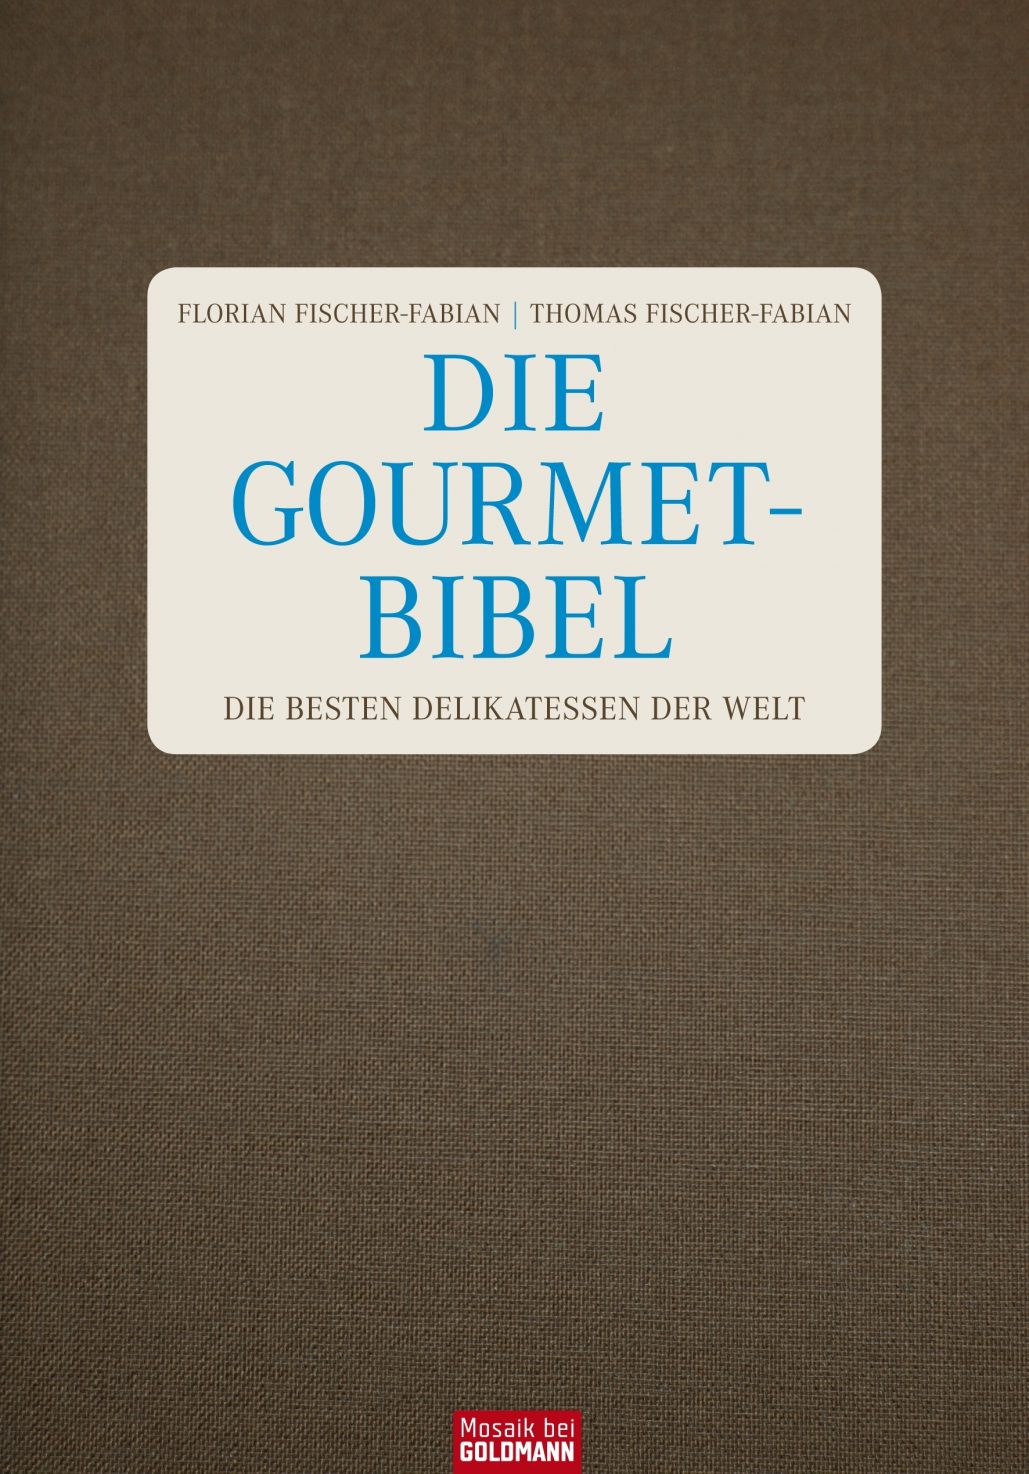 Die Gourmet-Bibel von Thomas Fischer-Fabian: Ein Werk für den guten Geschmack